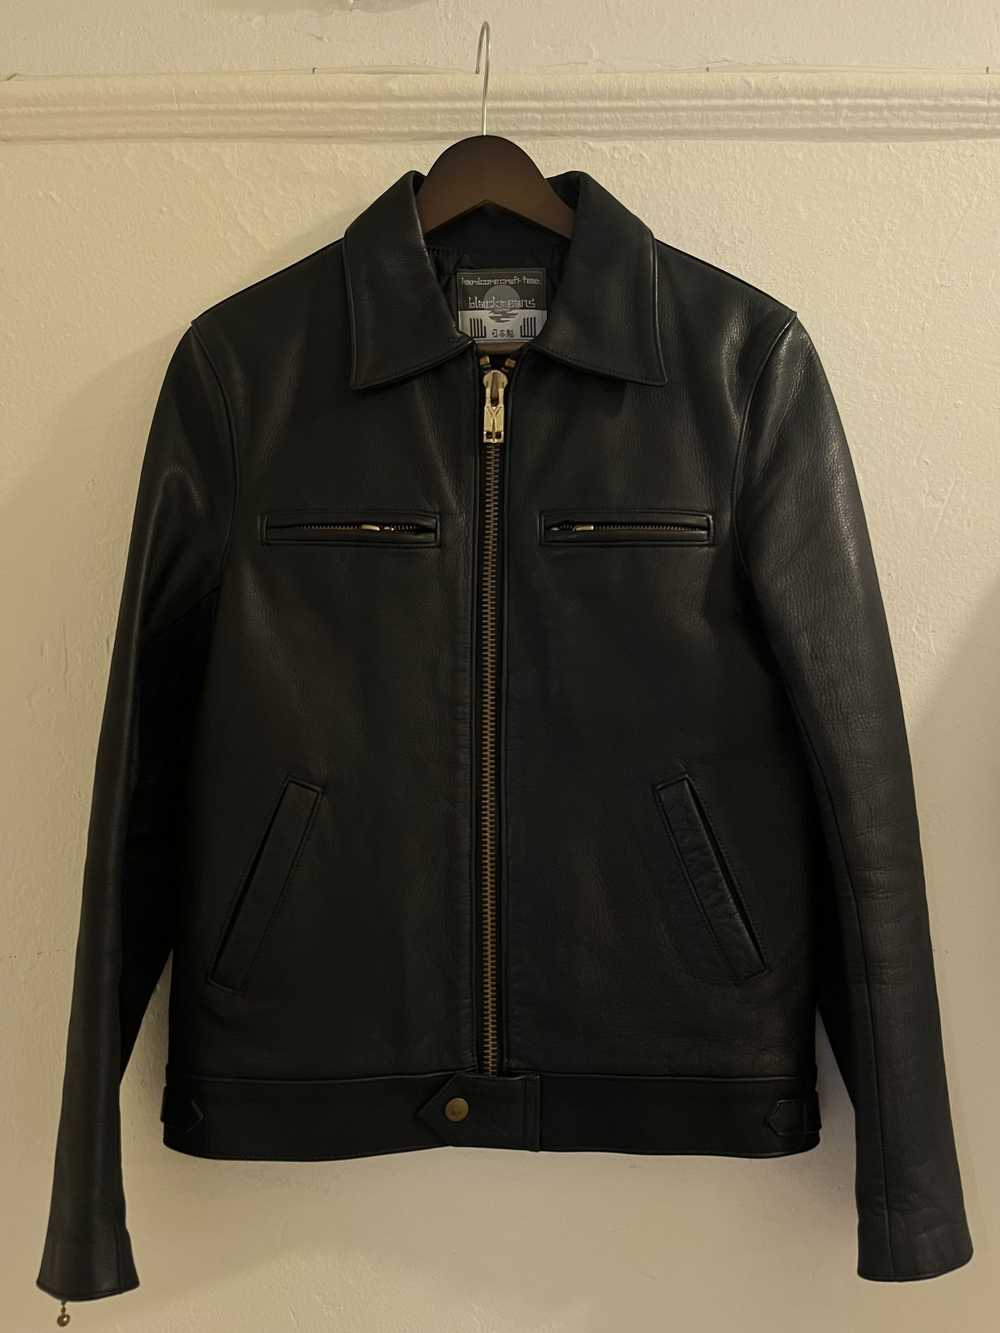 Blackmeans "Dominator" Leather Jacket - image 1